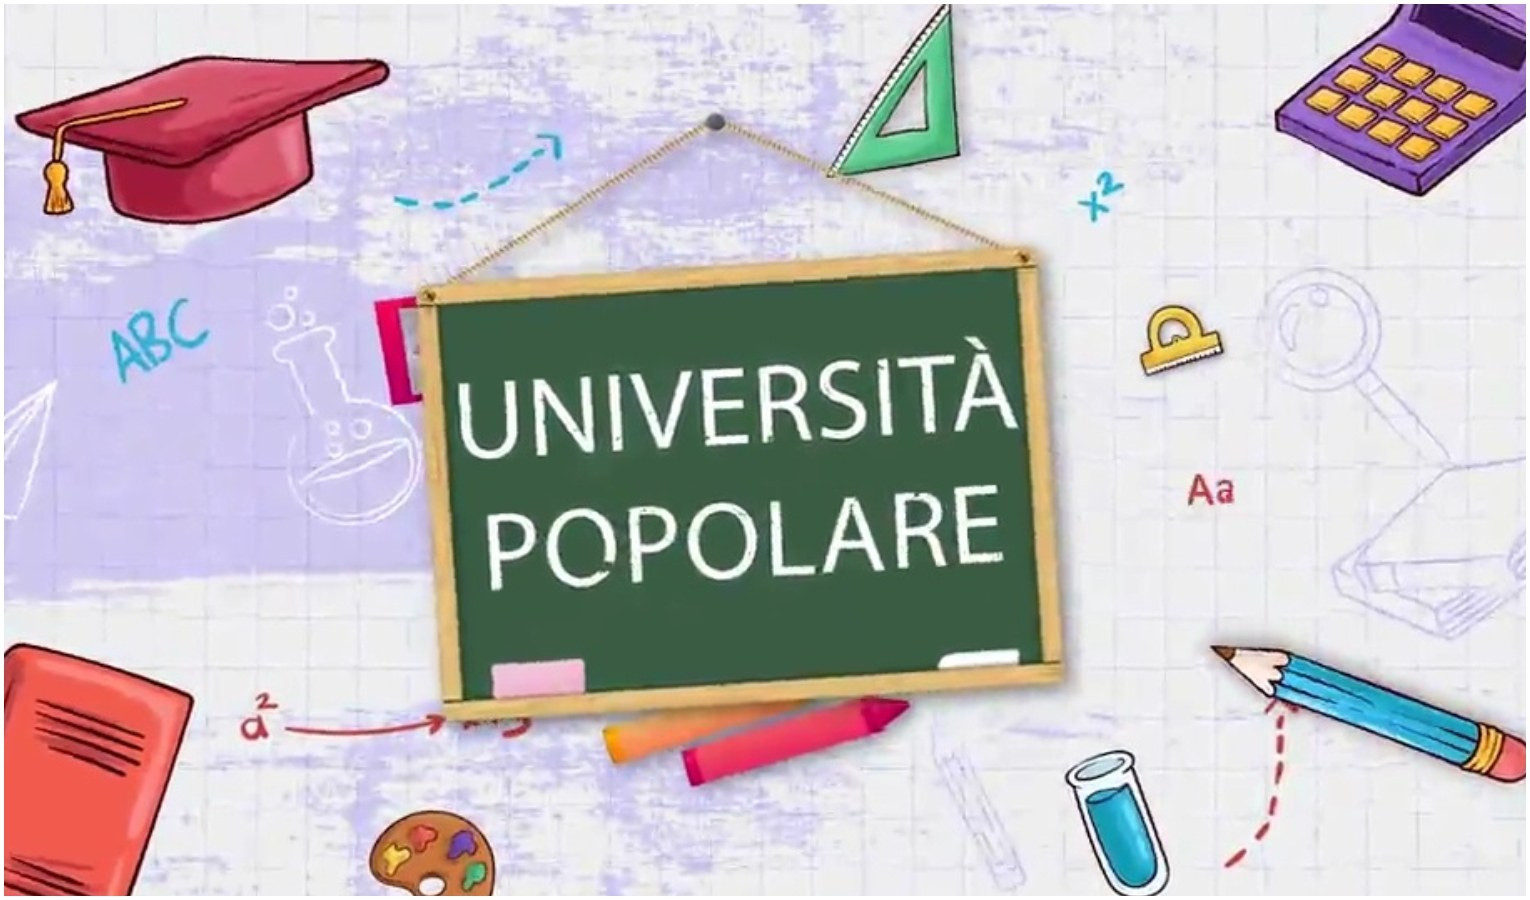 Università popolare - L'italiano dei liguri